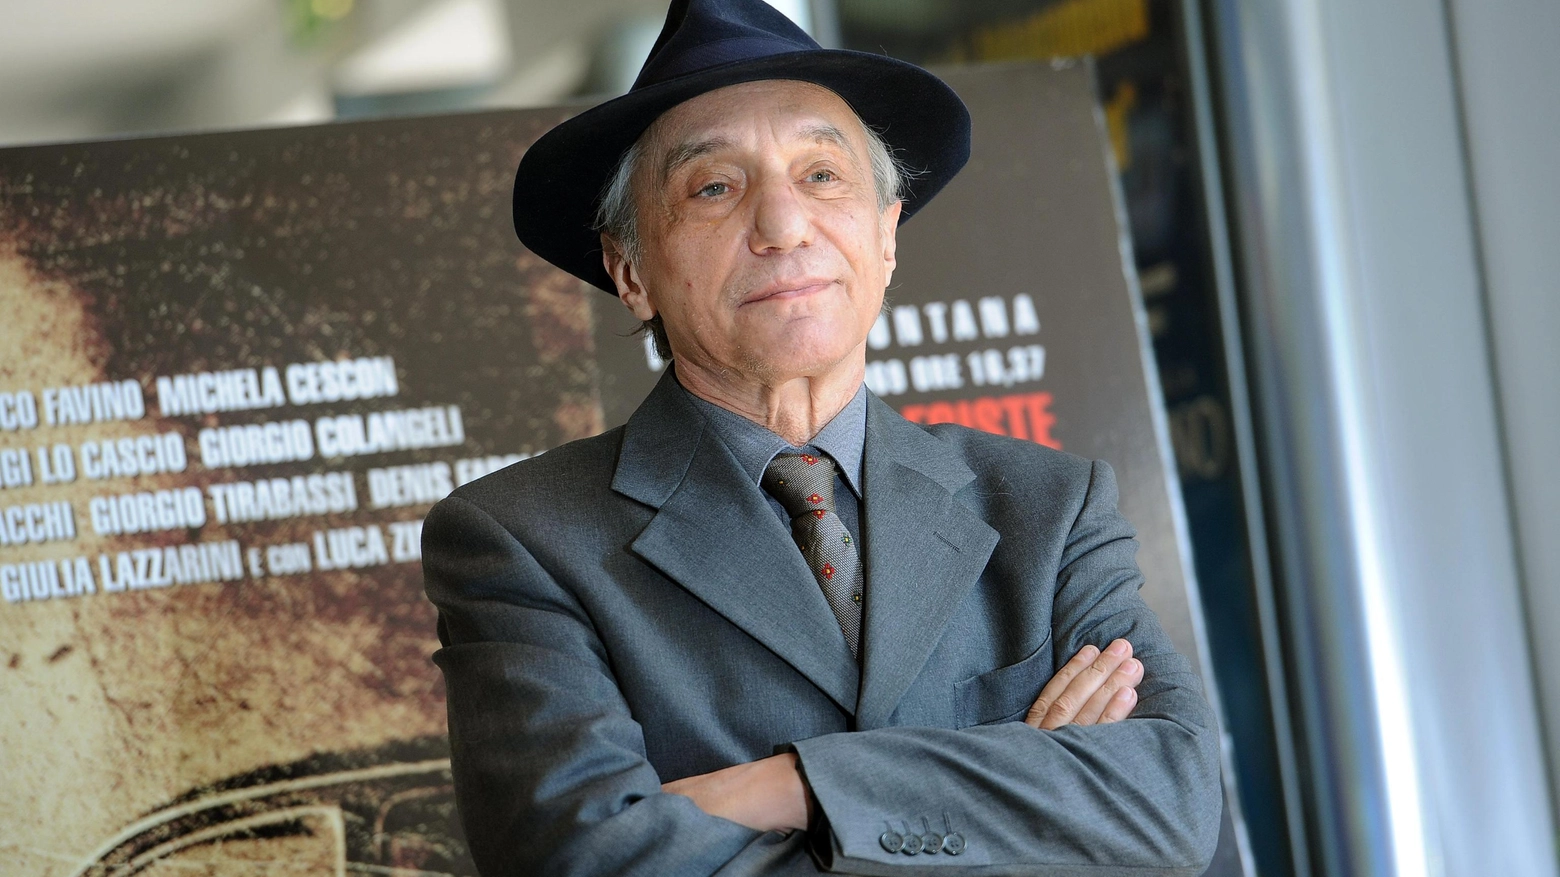 Sergio Solli durante il photo call del film Romanzo di una strage, 26 marzo 2012 (Ansa)